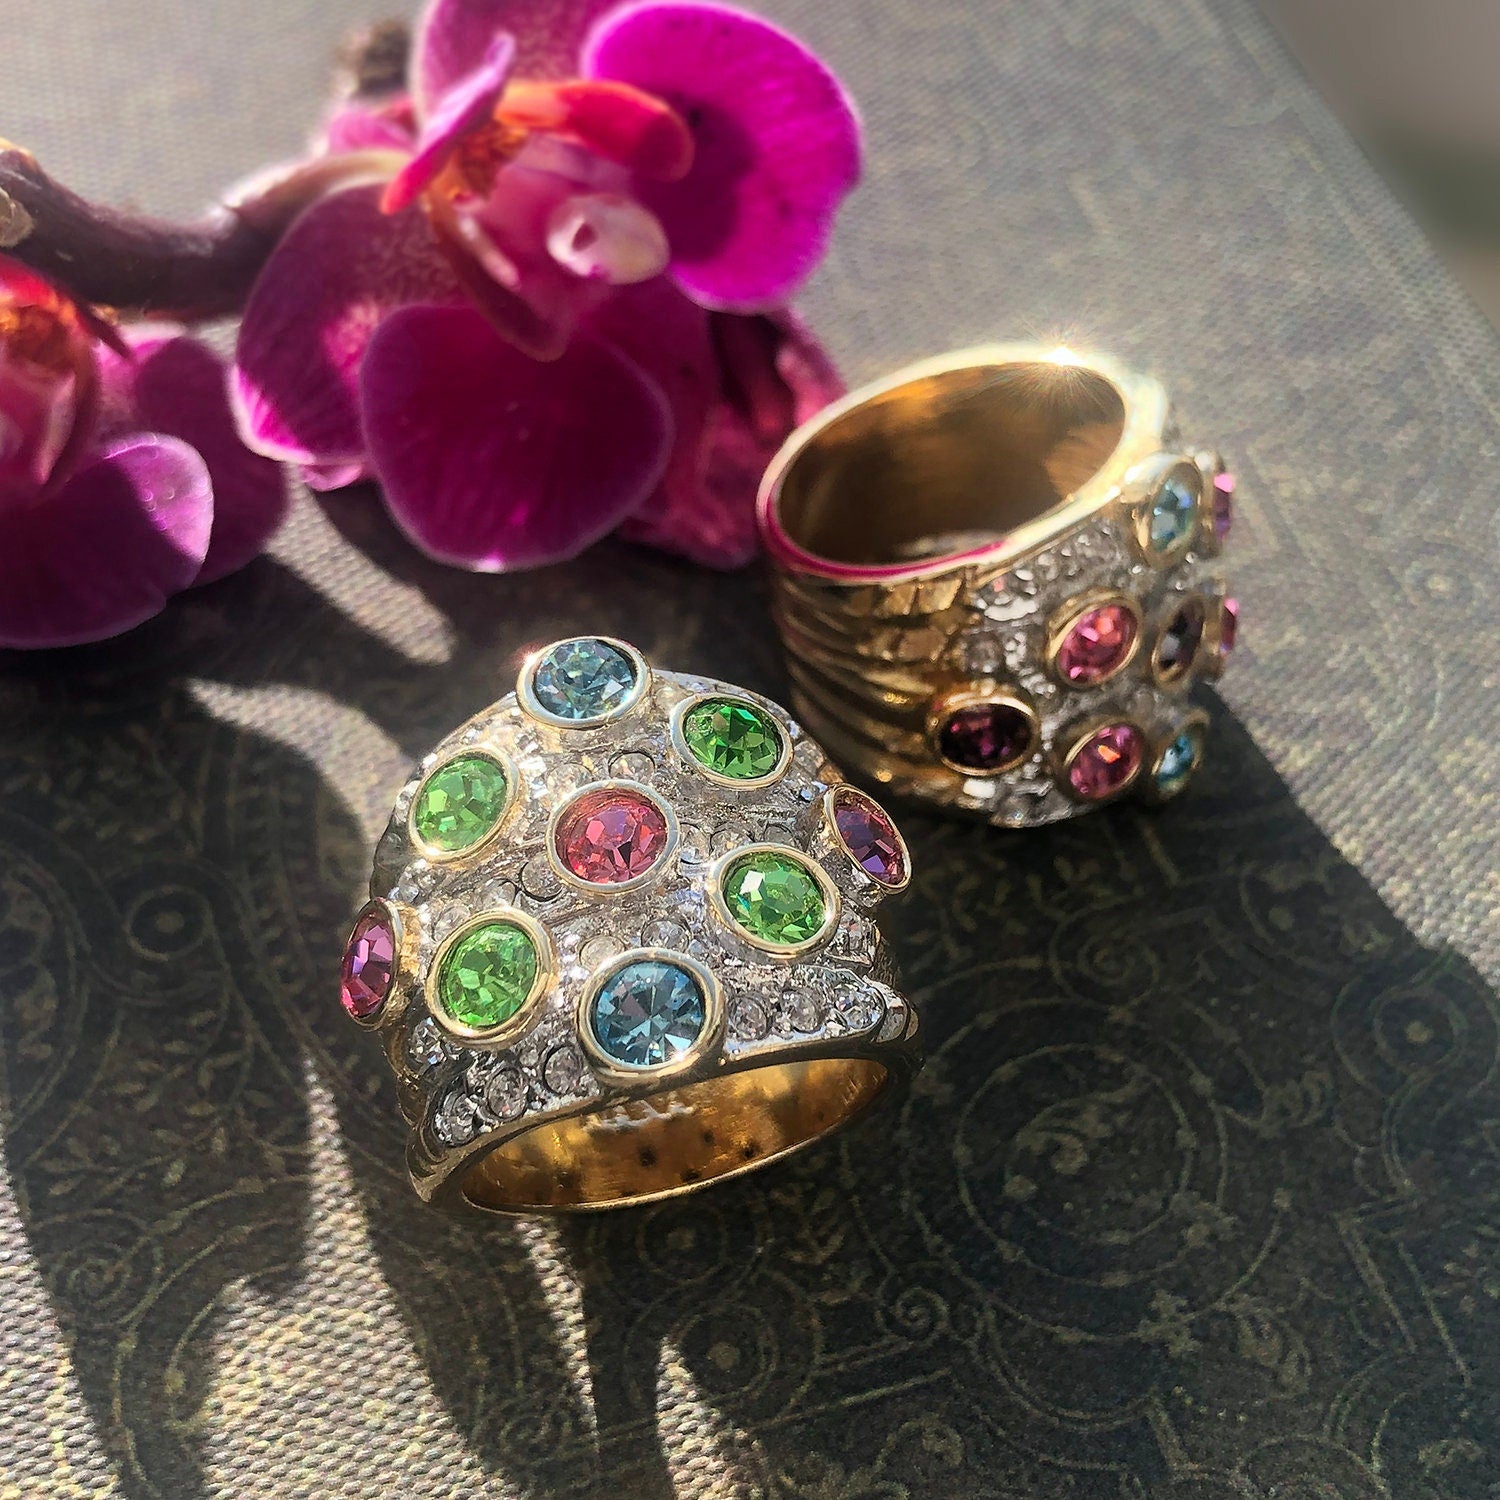 Swarovski Crystal Ring, Rose Gold Vermeil Swarovski Crystal Ring, Clear &  Chocolate Crystals, Rose Gold Band, Vintage Ring, S 7, FREE SIZING